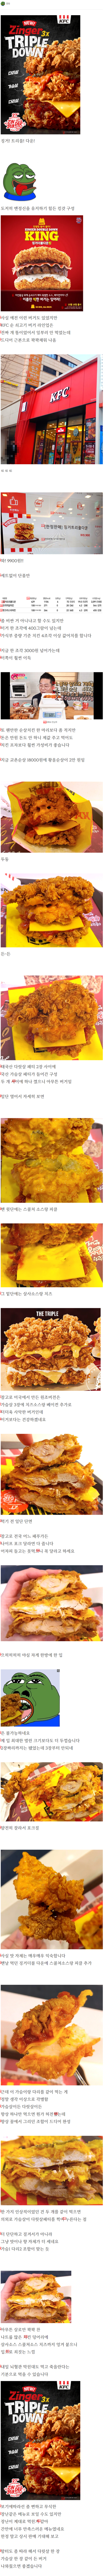 KFC 징거트리플 다운 후기.jpg